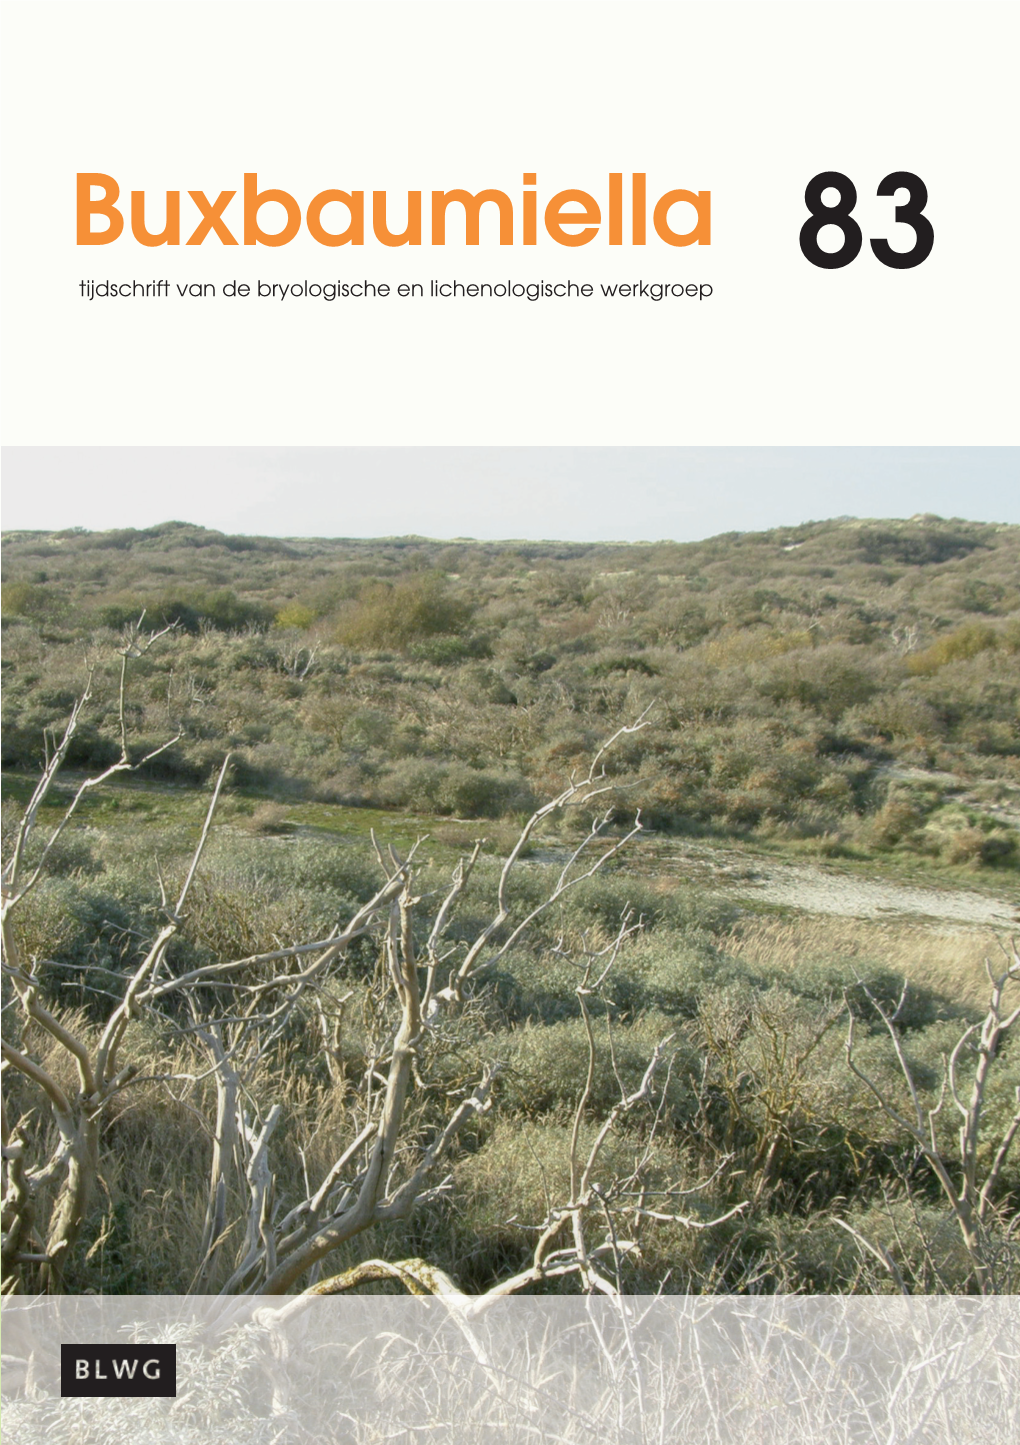 Buxbaumiella 83, April 2009